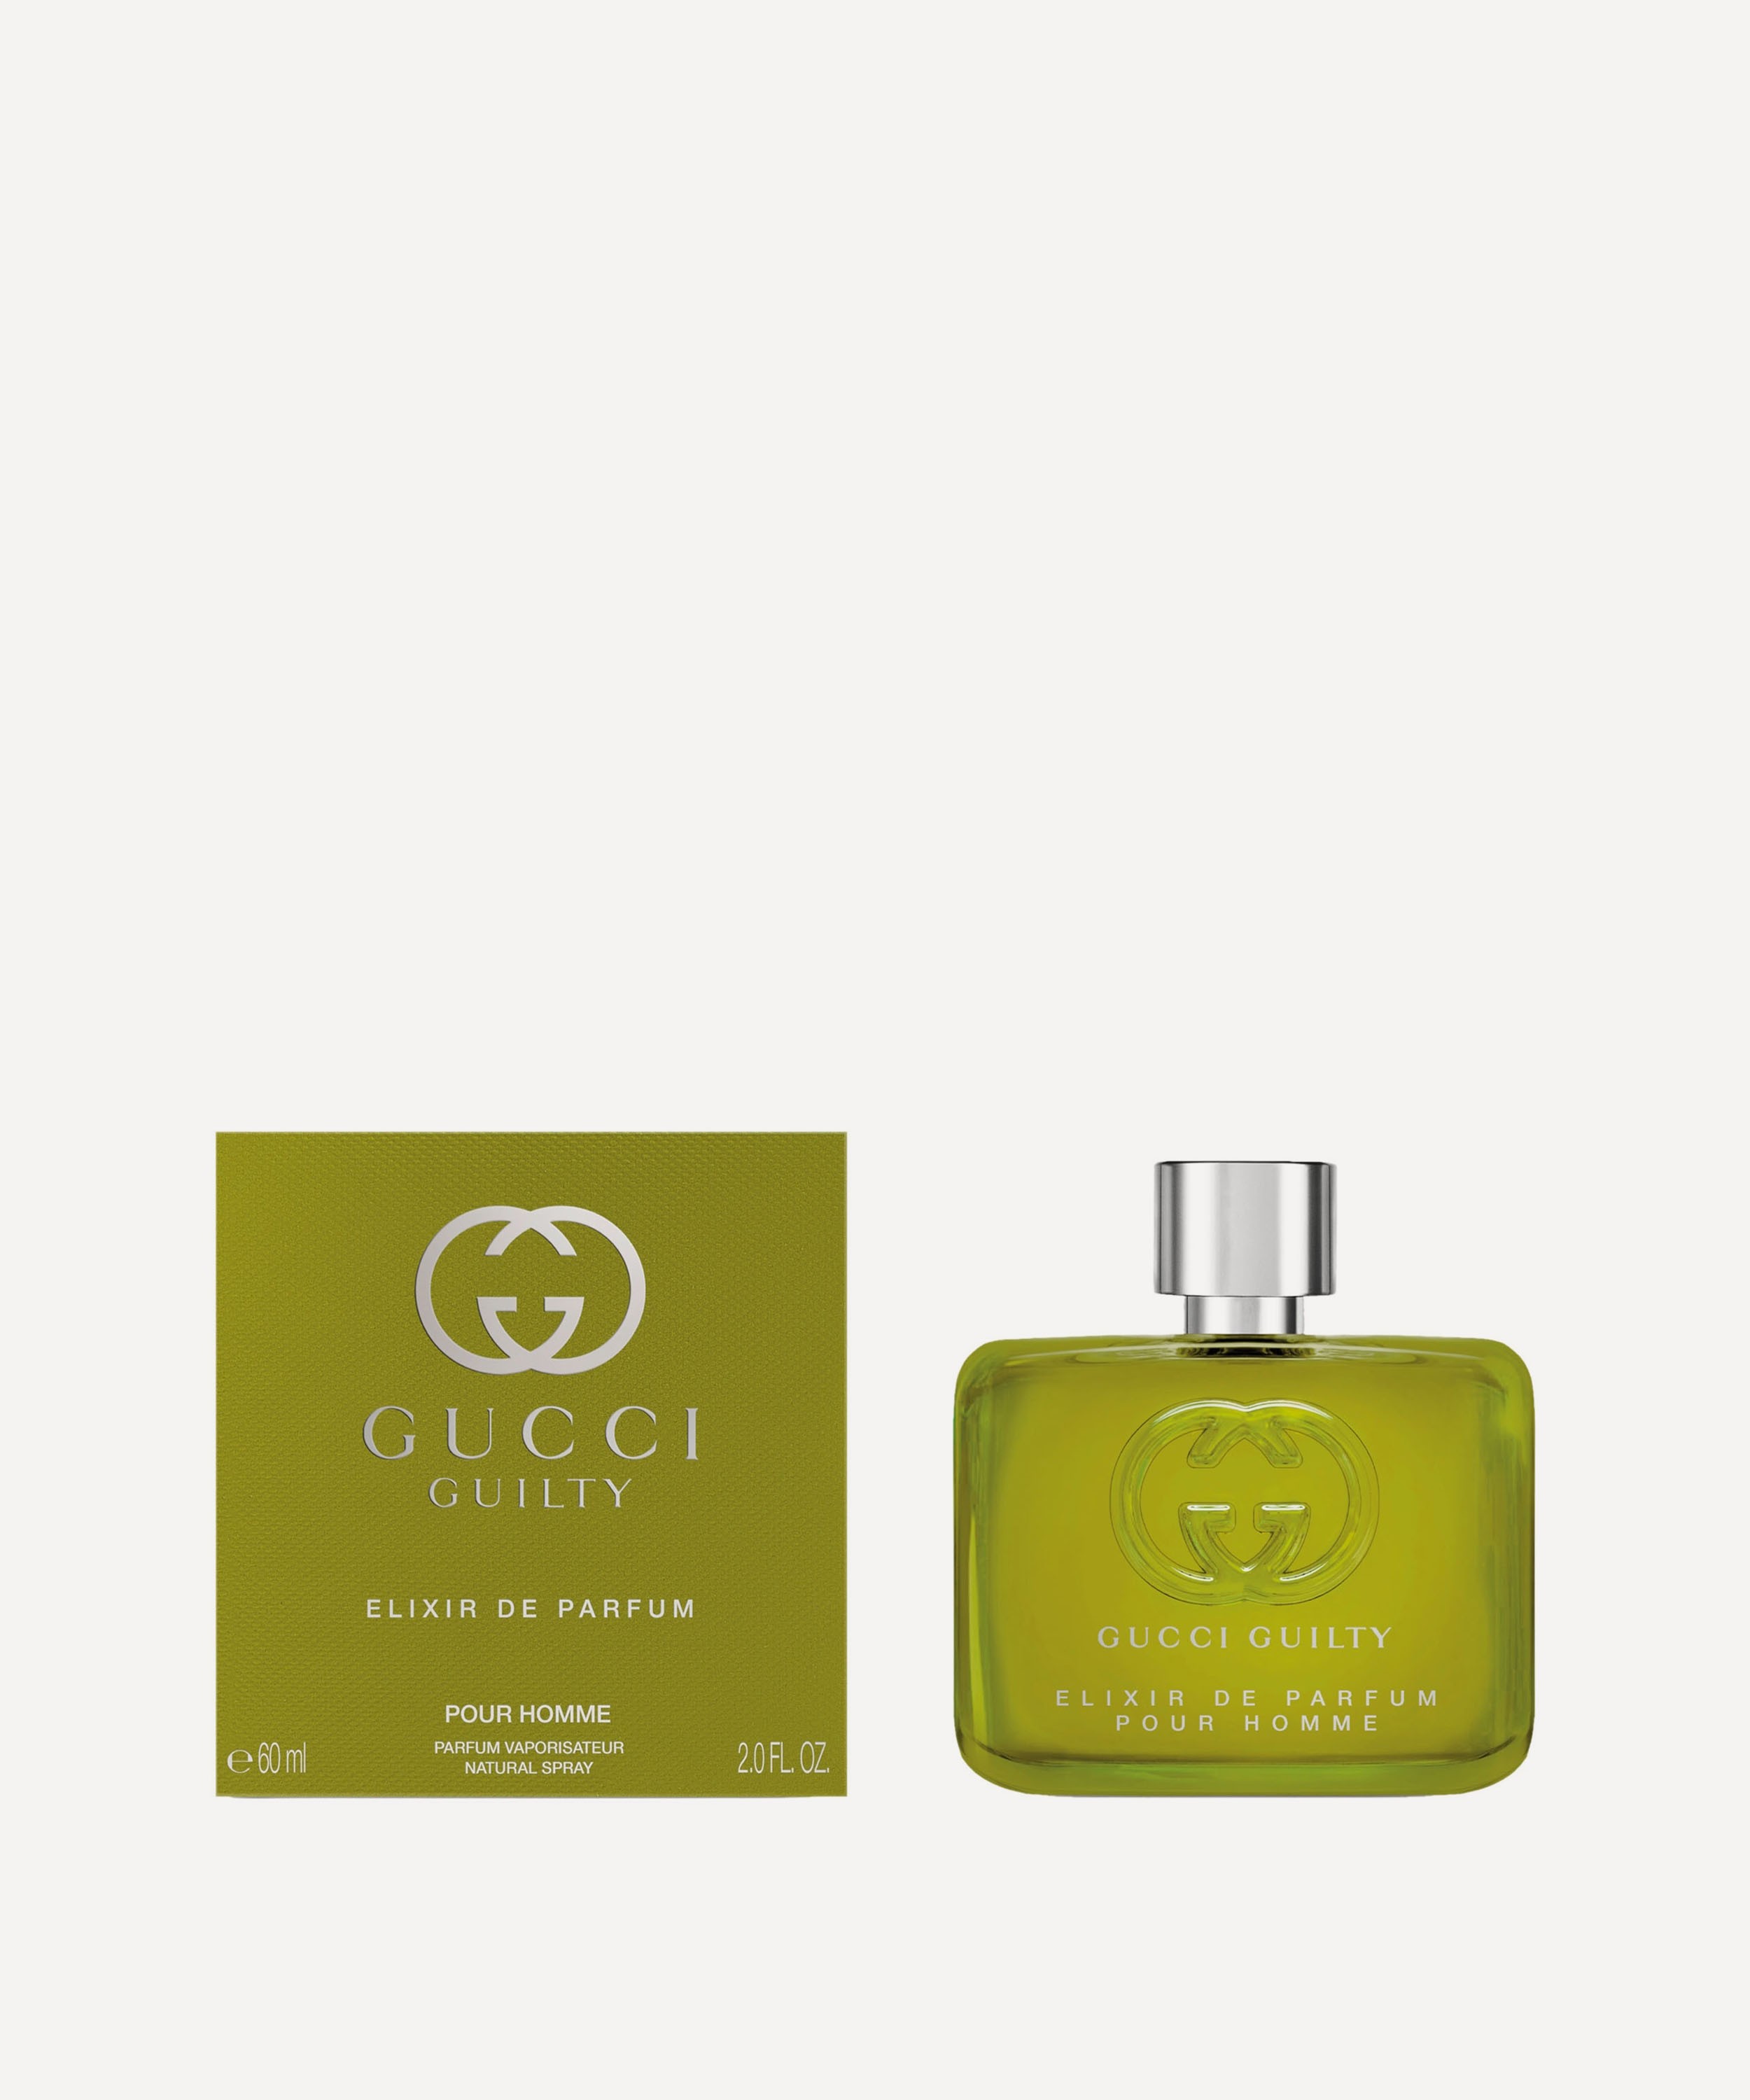 Gucci - Gucci Guilty Pour Homme Elixir de Parfum 60ml image number 1